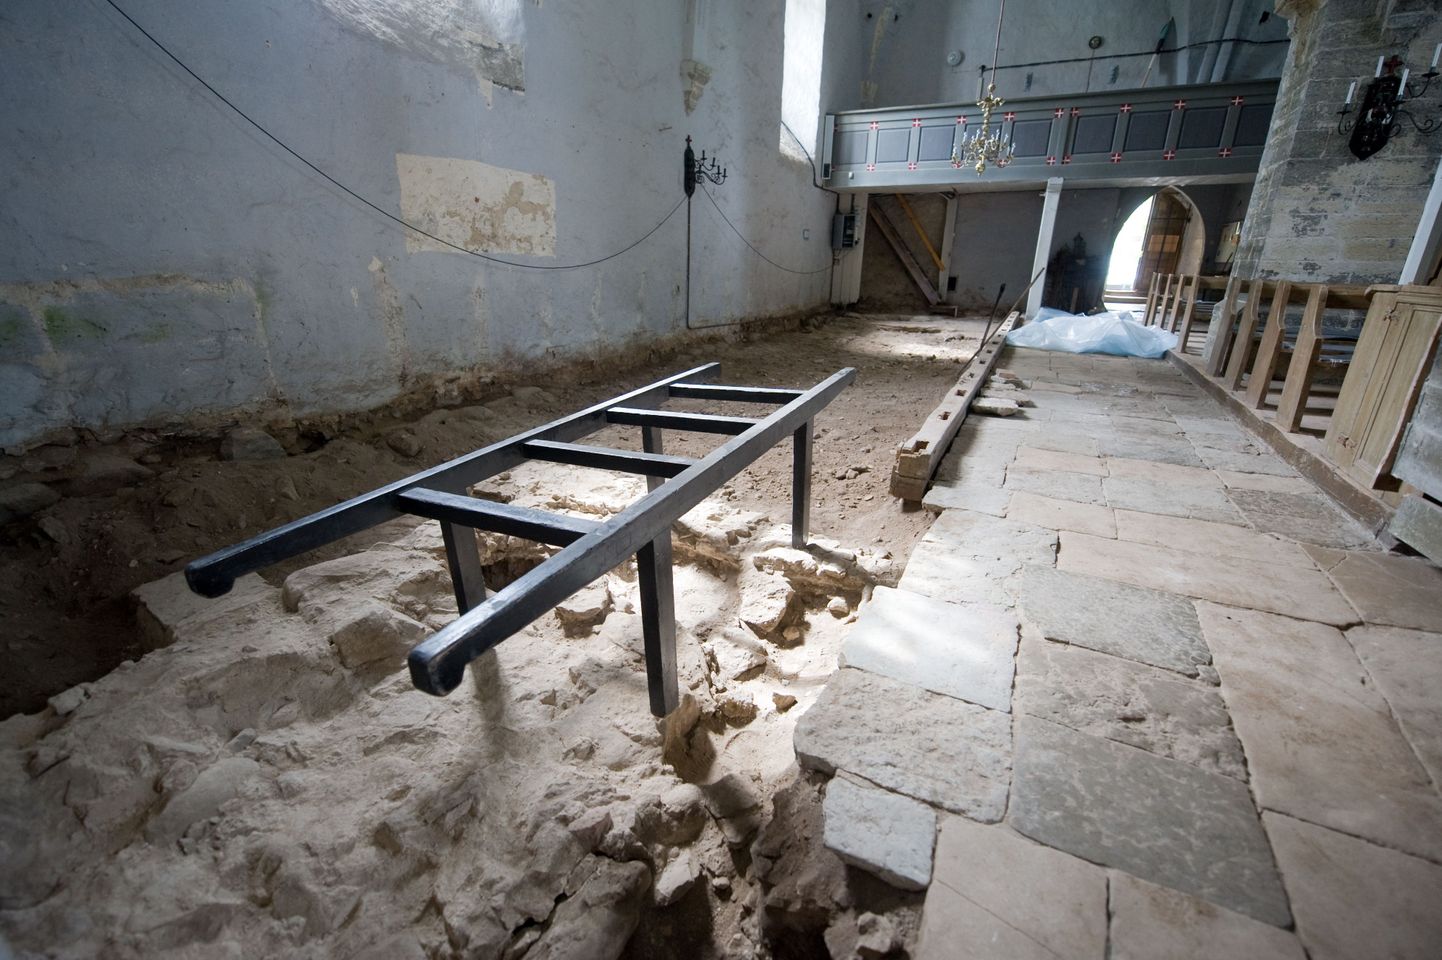 Väärtuslik leid avastati pärast Harju-Risti kiriku laudpõranda eemaldamist pinnasest ning osalt ka keskaegse põranda alt.